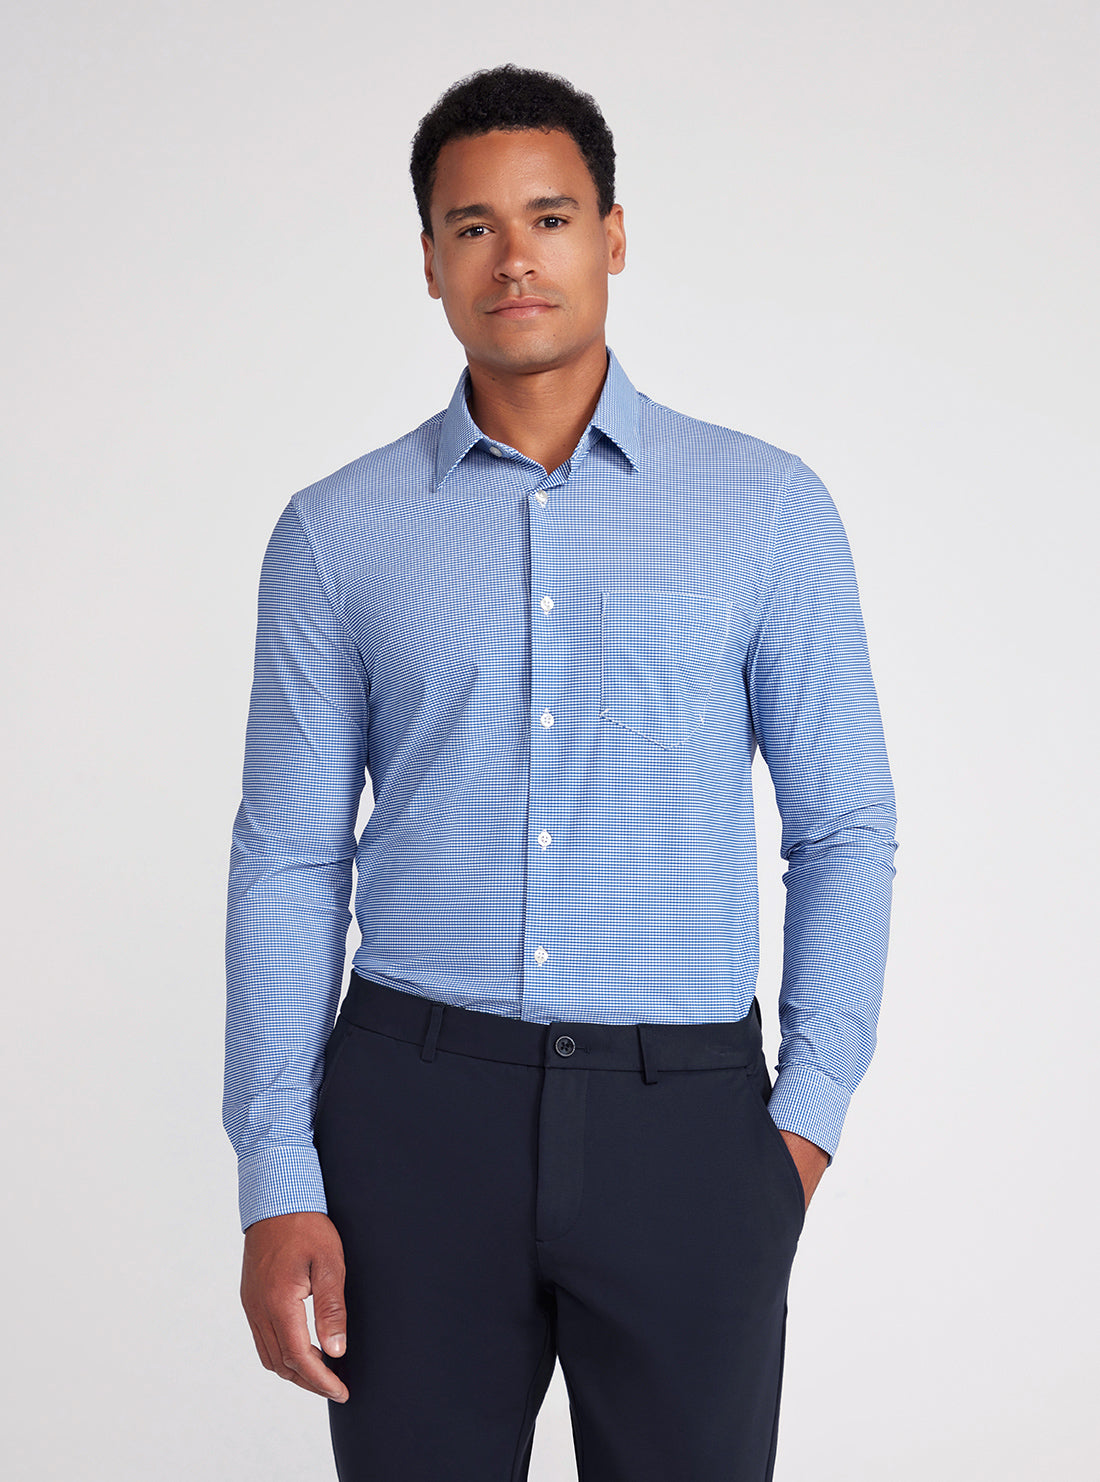 Blue Sunset Tech Stretch Shirt | GUESS men's apparel | front view